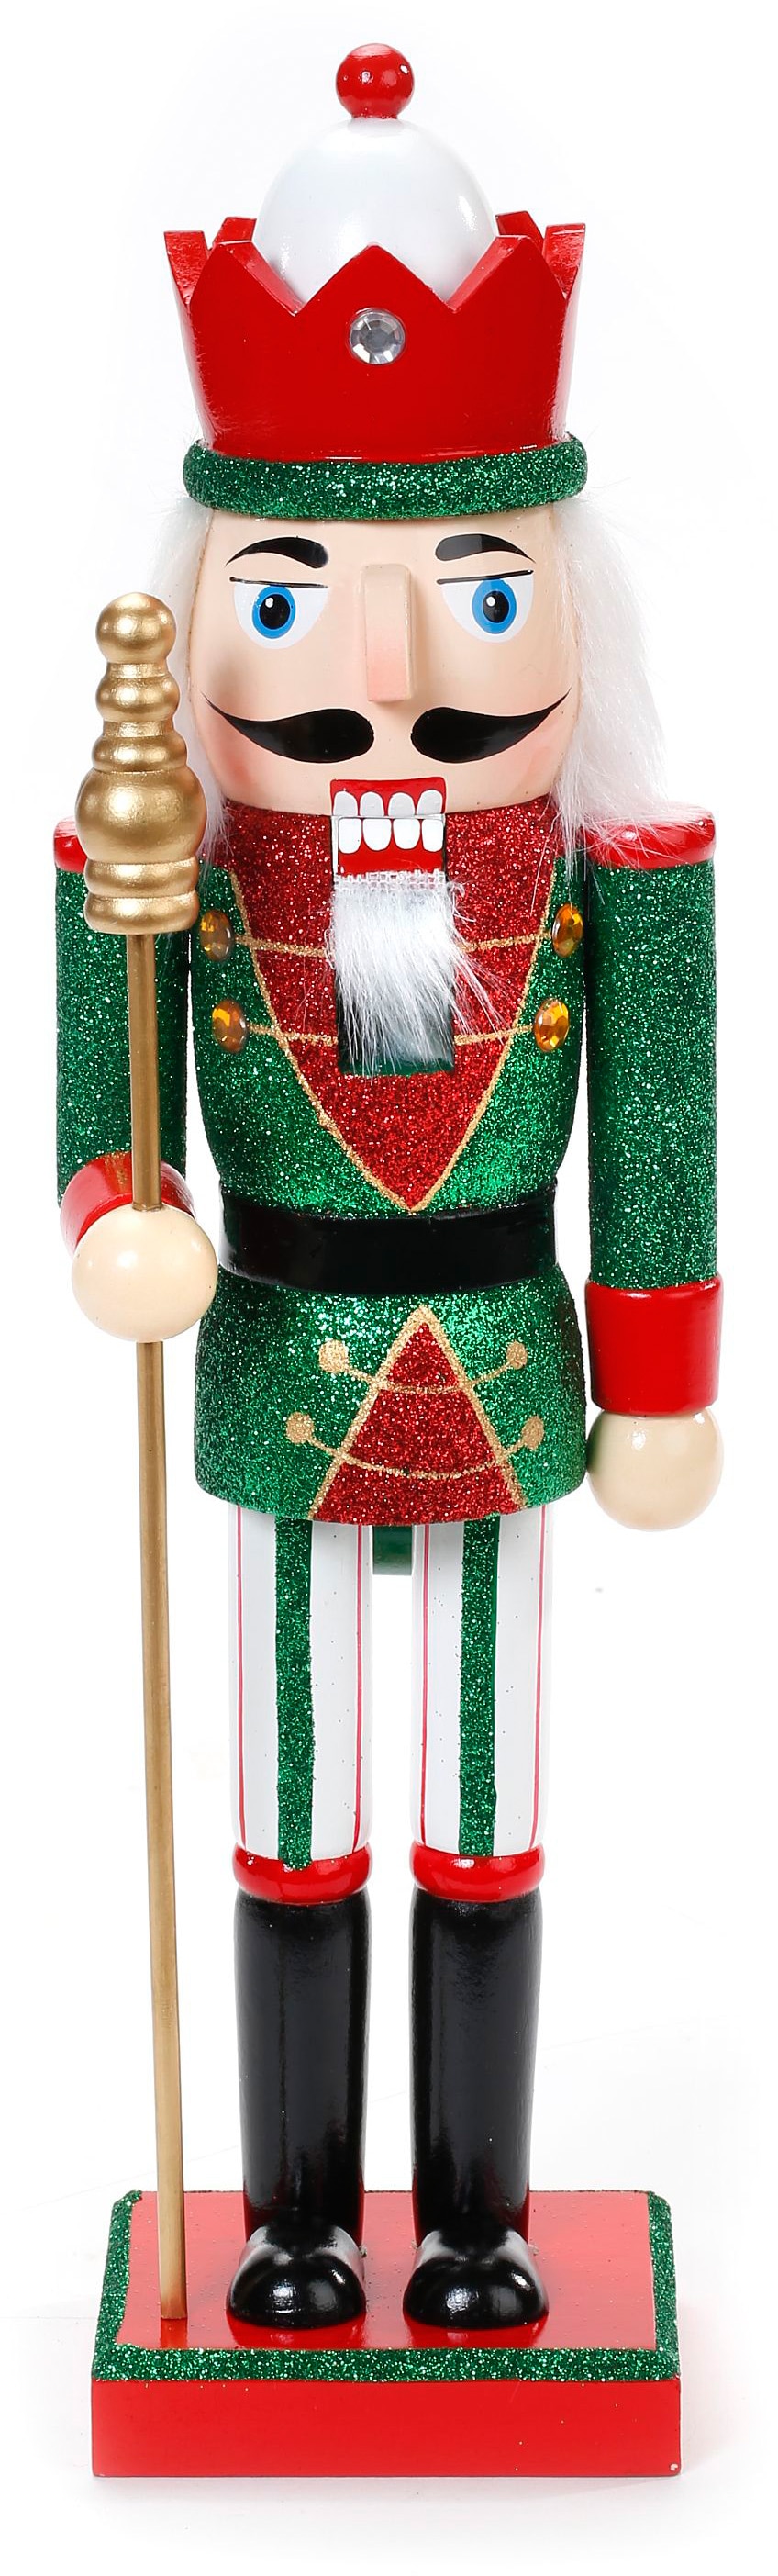 Weihnachtsfigur Inge BAUR GOODS | by CHRISTMAS »Weihnachtsdeko«, Gestaltung kaufen traditioneller in Nussknacker